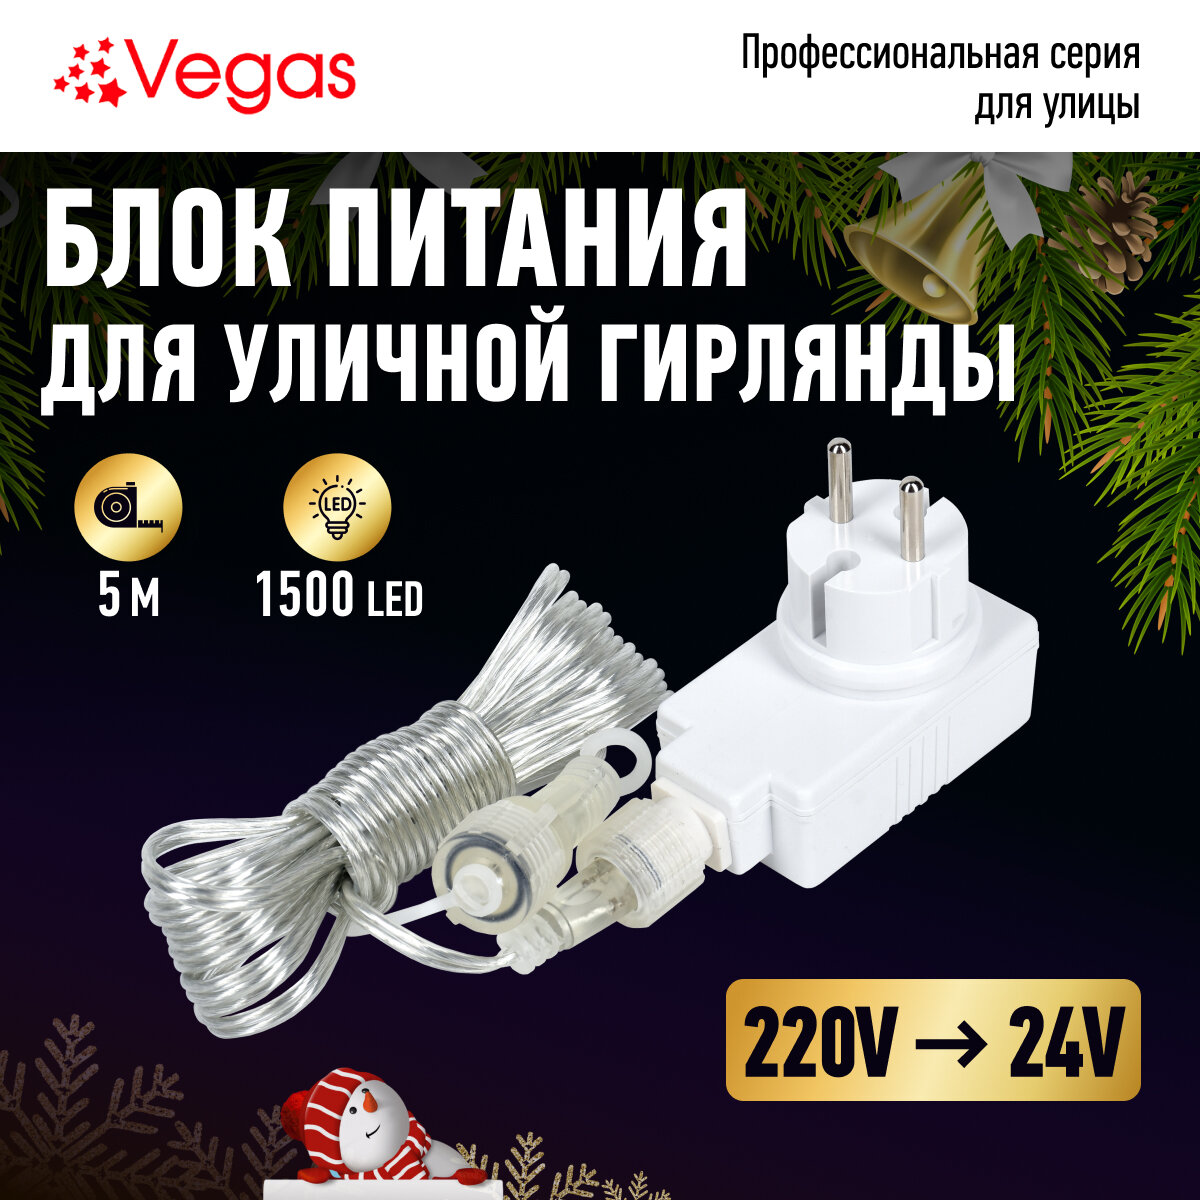 Блок питания (преобразователь) 220V/24V, мощность 30 W (максимальное подключение 1 500 LED ламп)